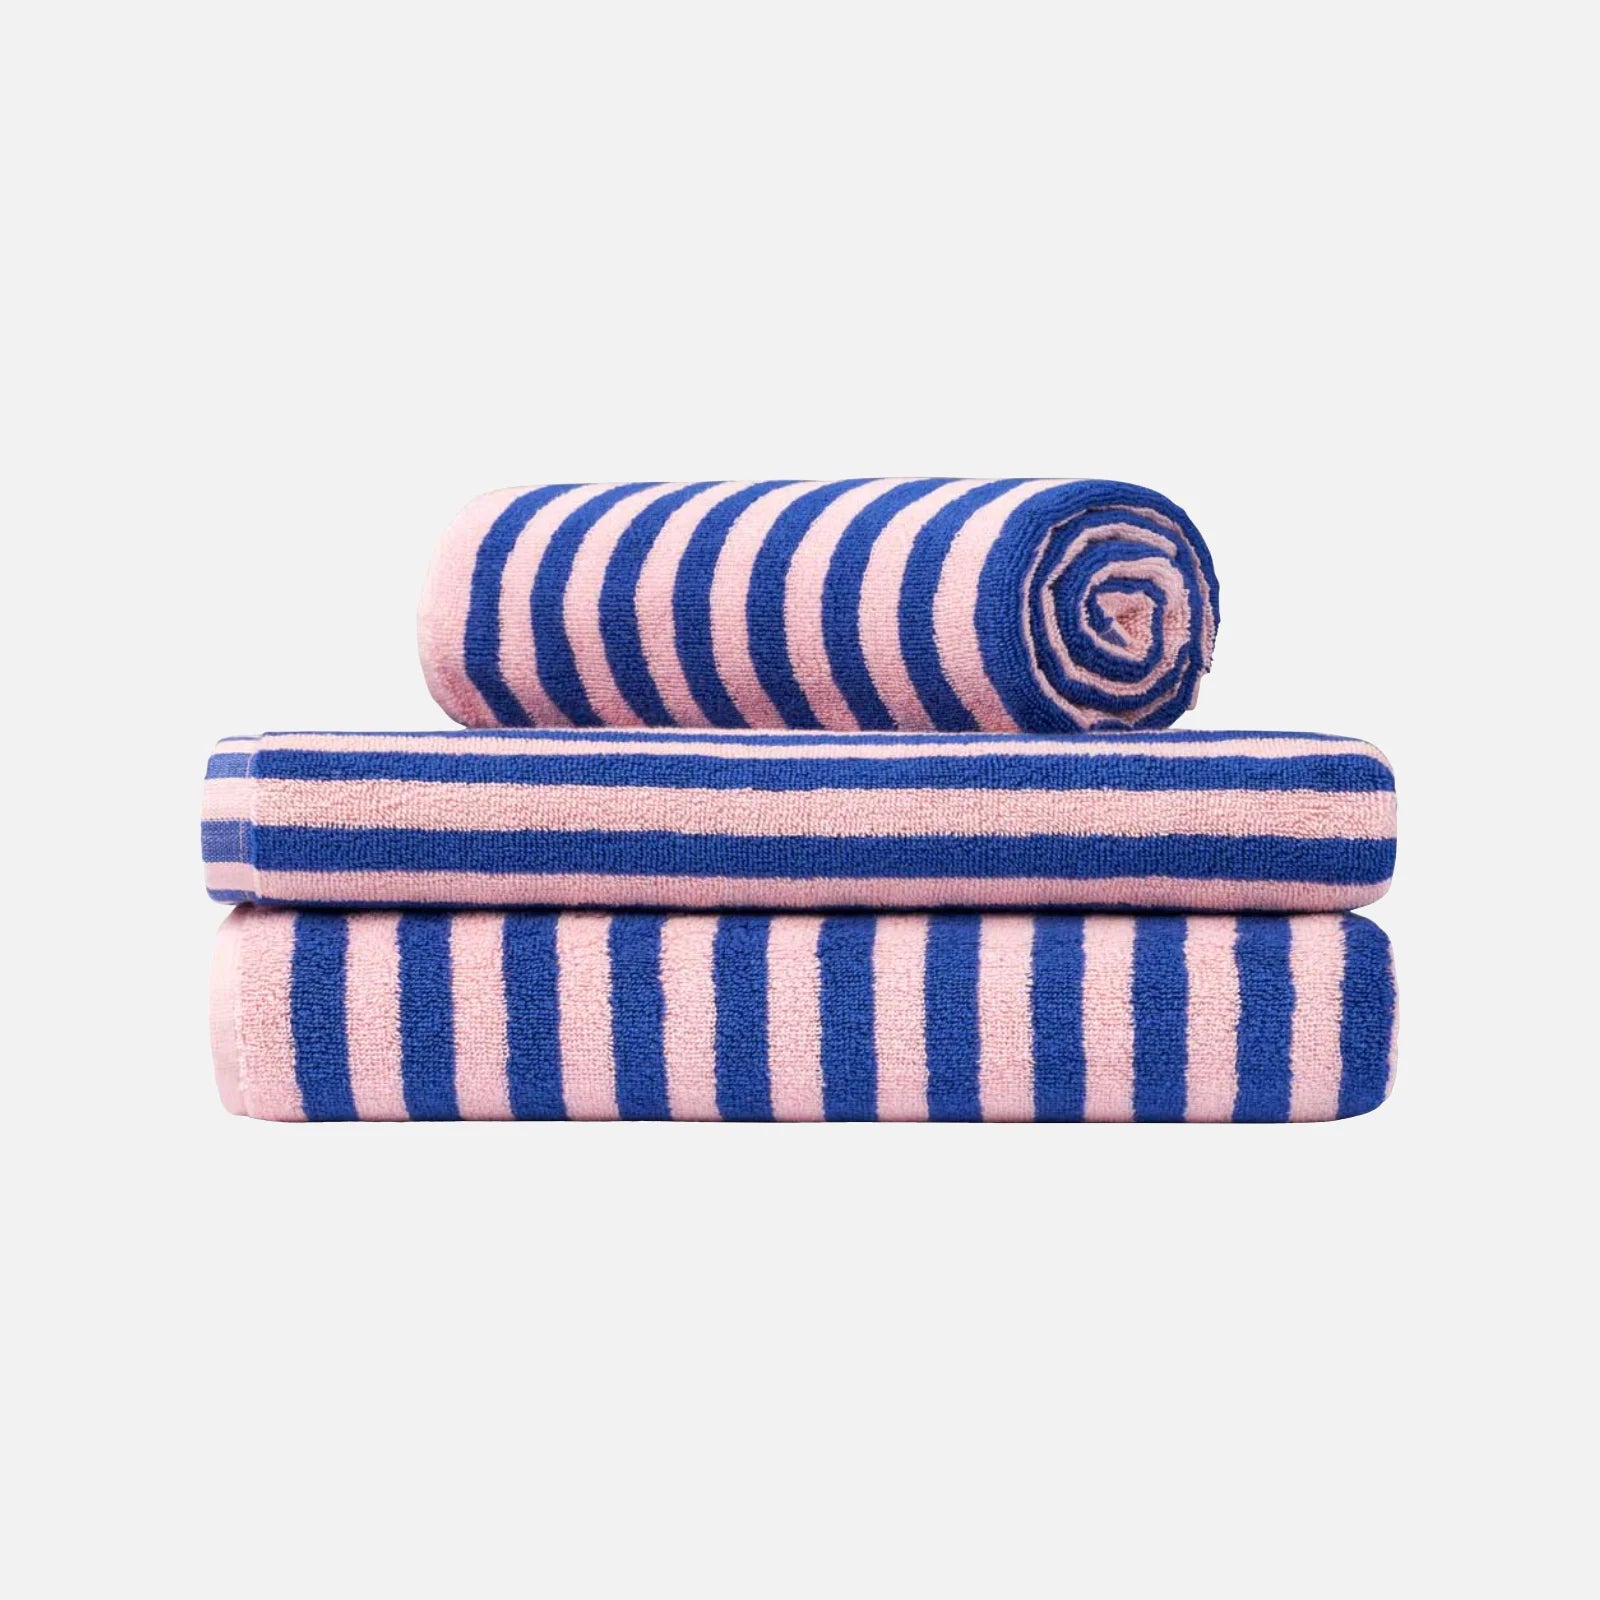 Naram håndklæder fra Bongusta i Dazzling Blue/Rose